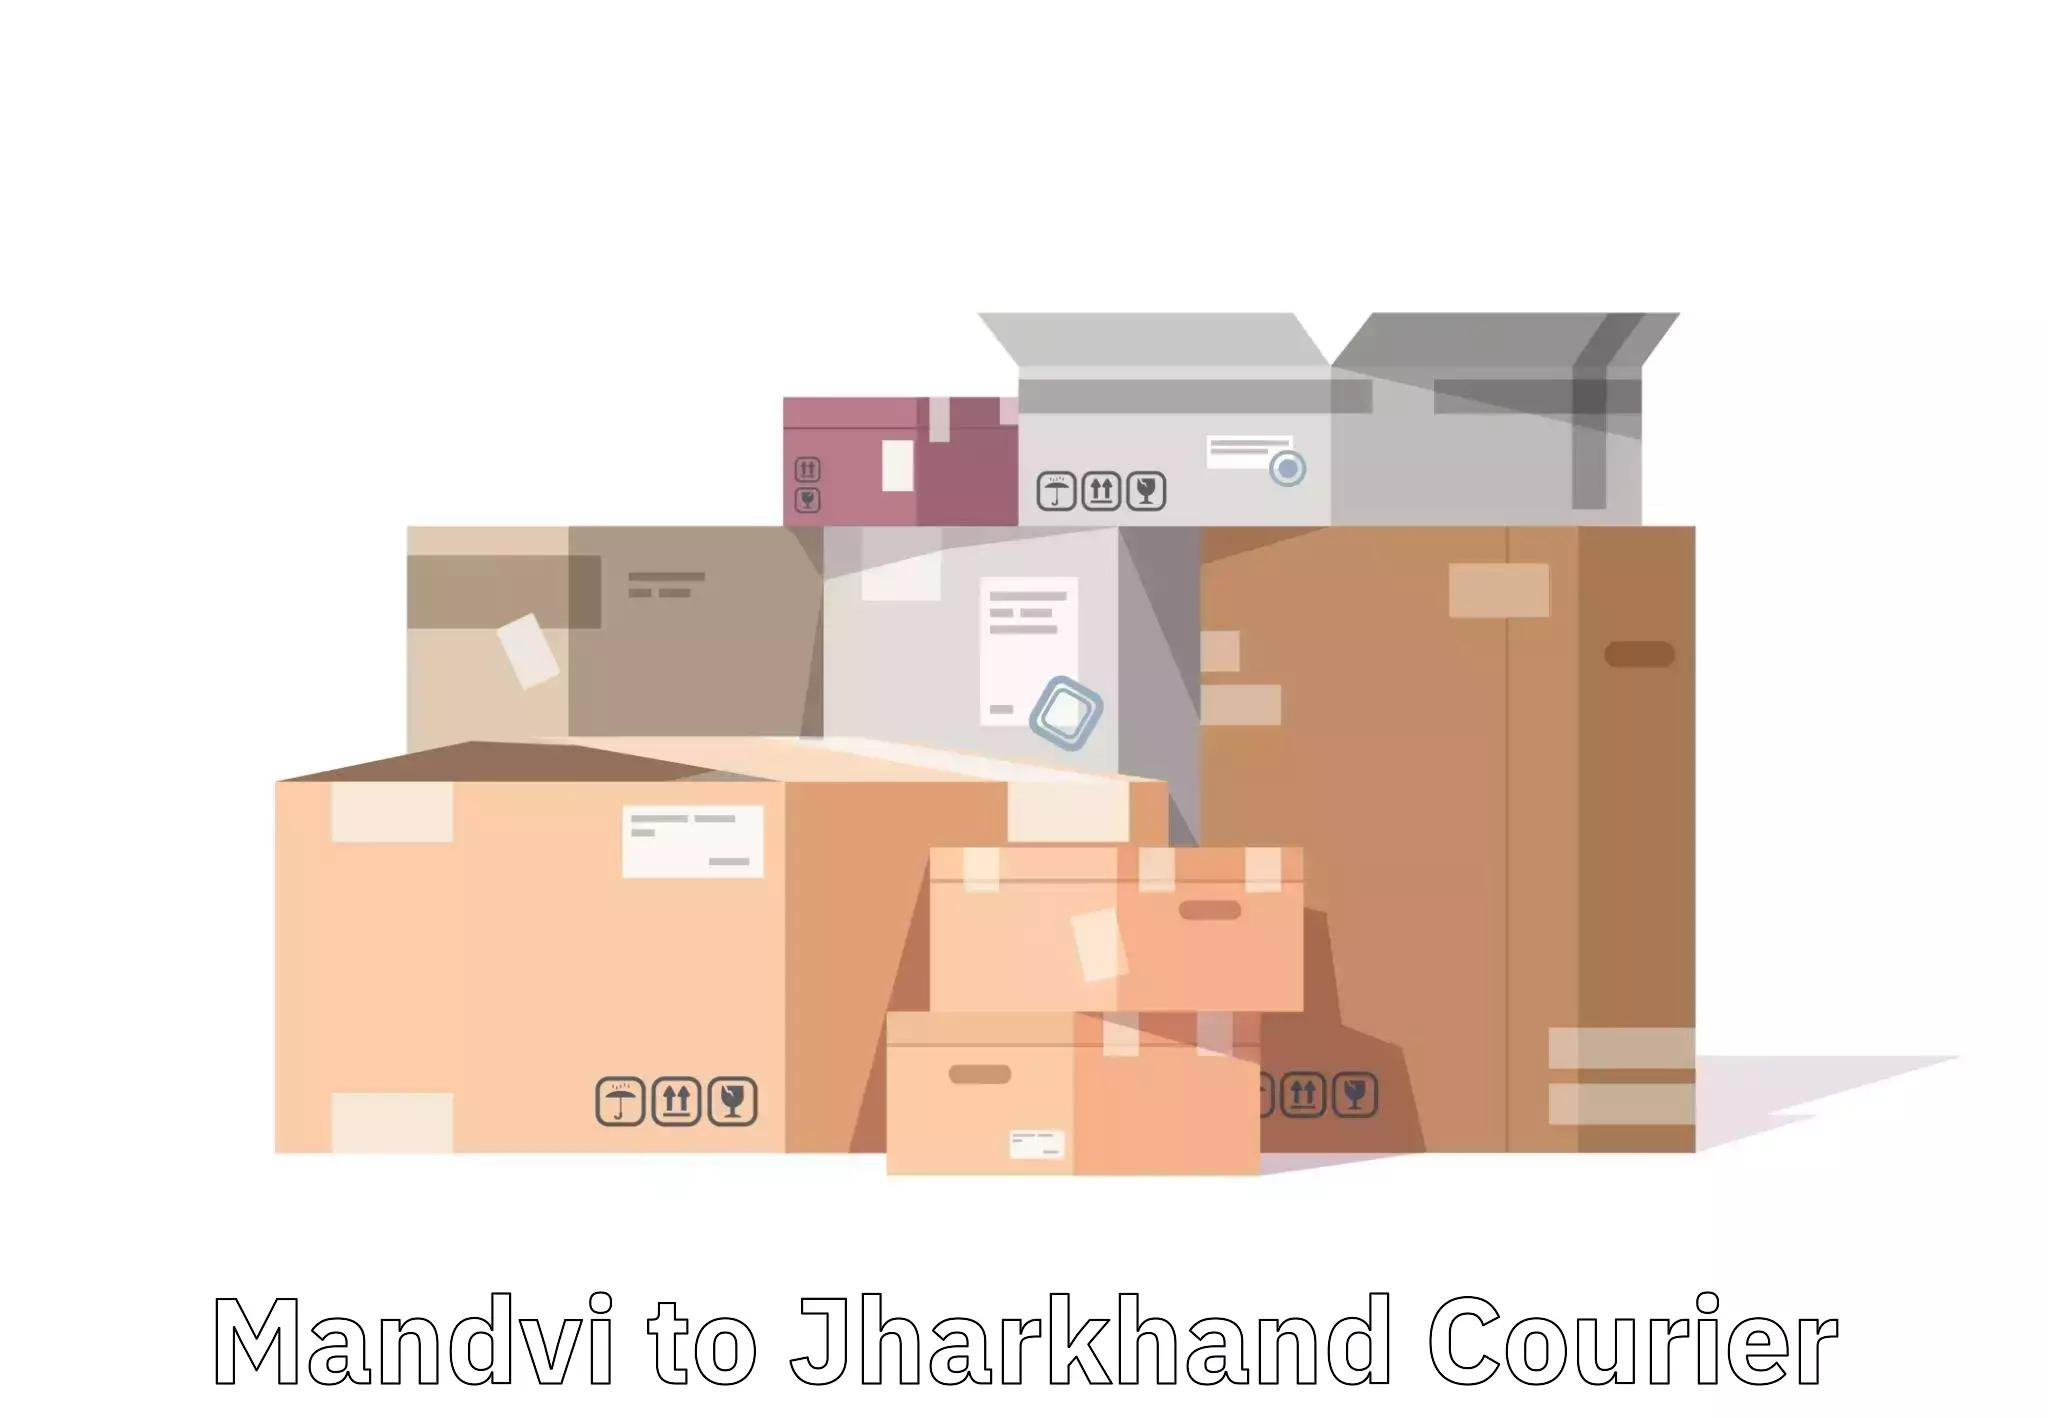 Efficient baggage courier system Mandvi to Jamshedpur